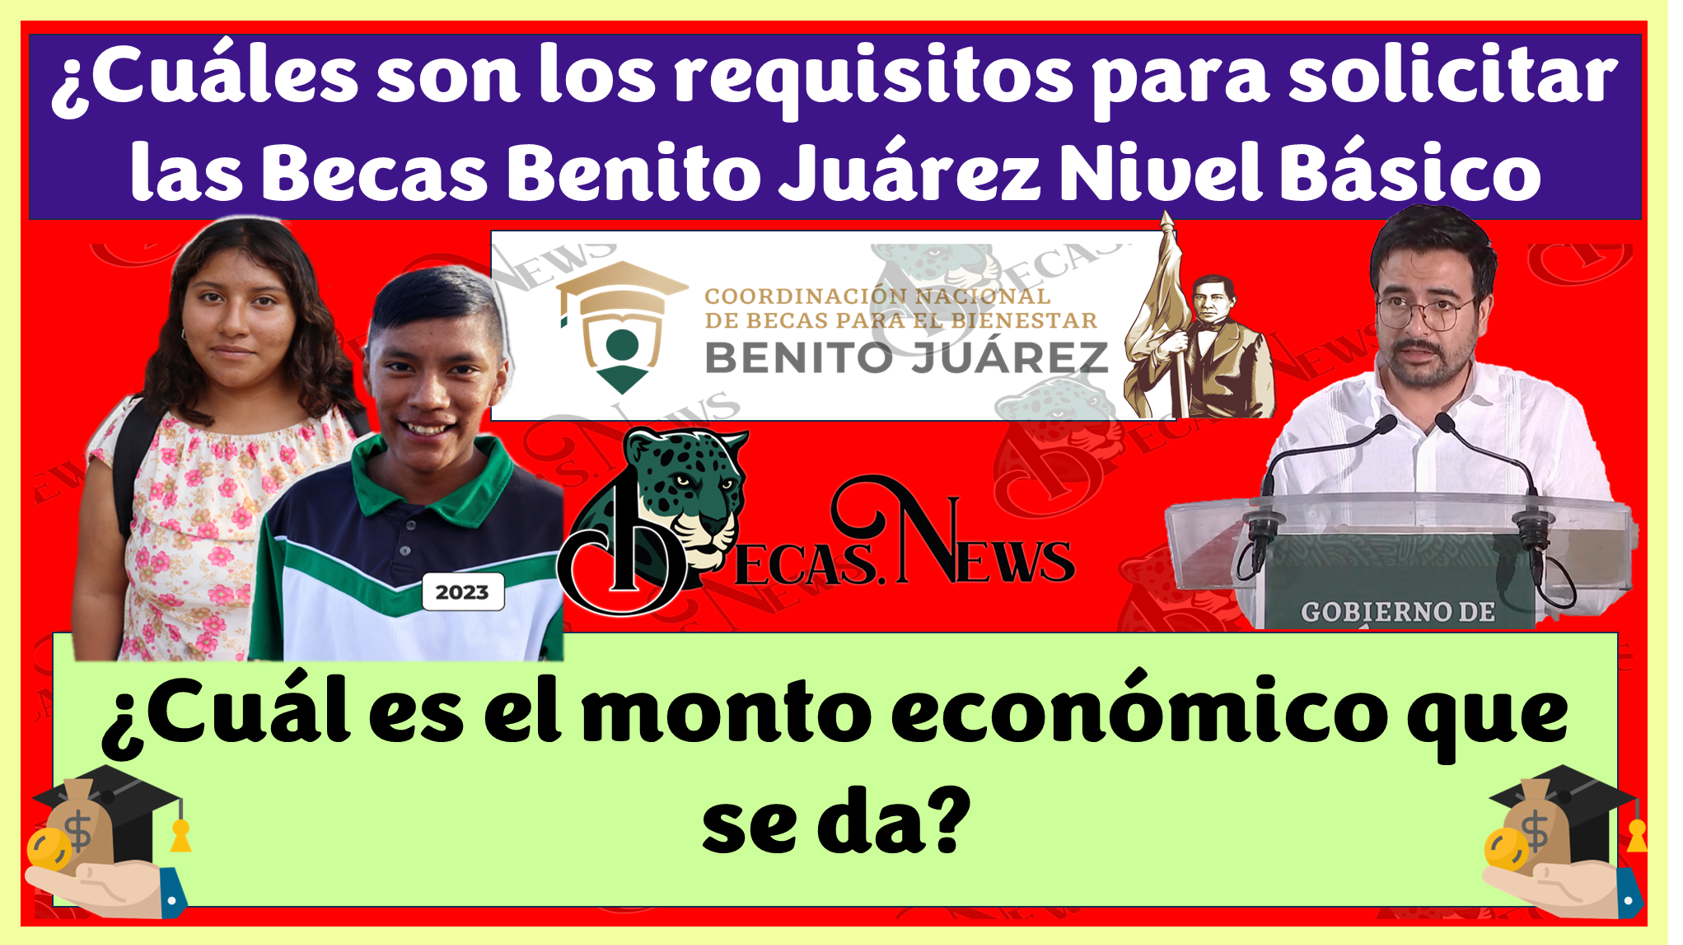 ¿Cuáles son los requisitos para solicitar las Becas Benito Juárez Nivel Básico y cuál es el monto económico que se da?